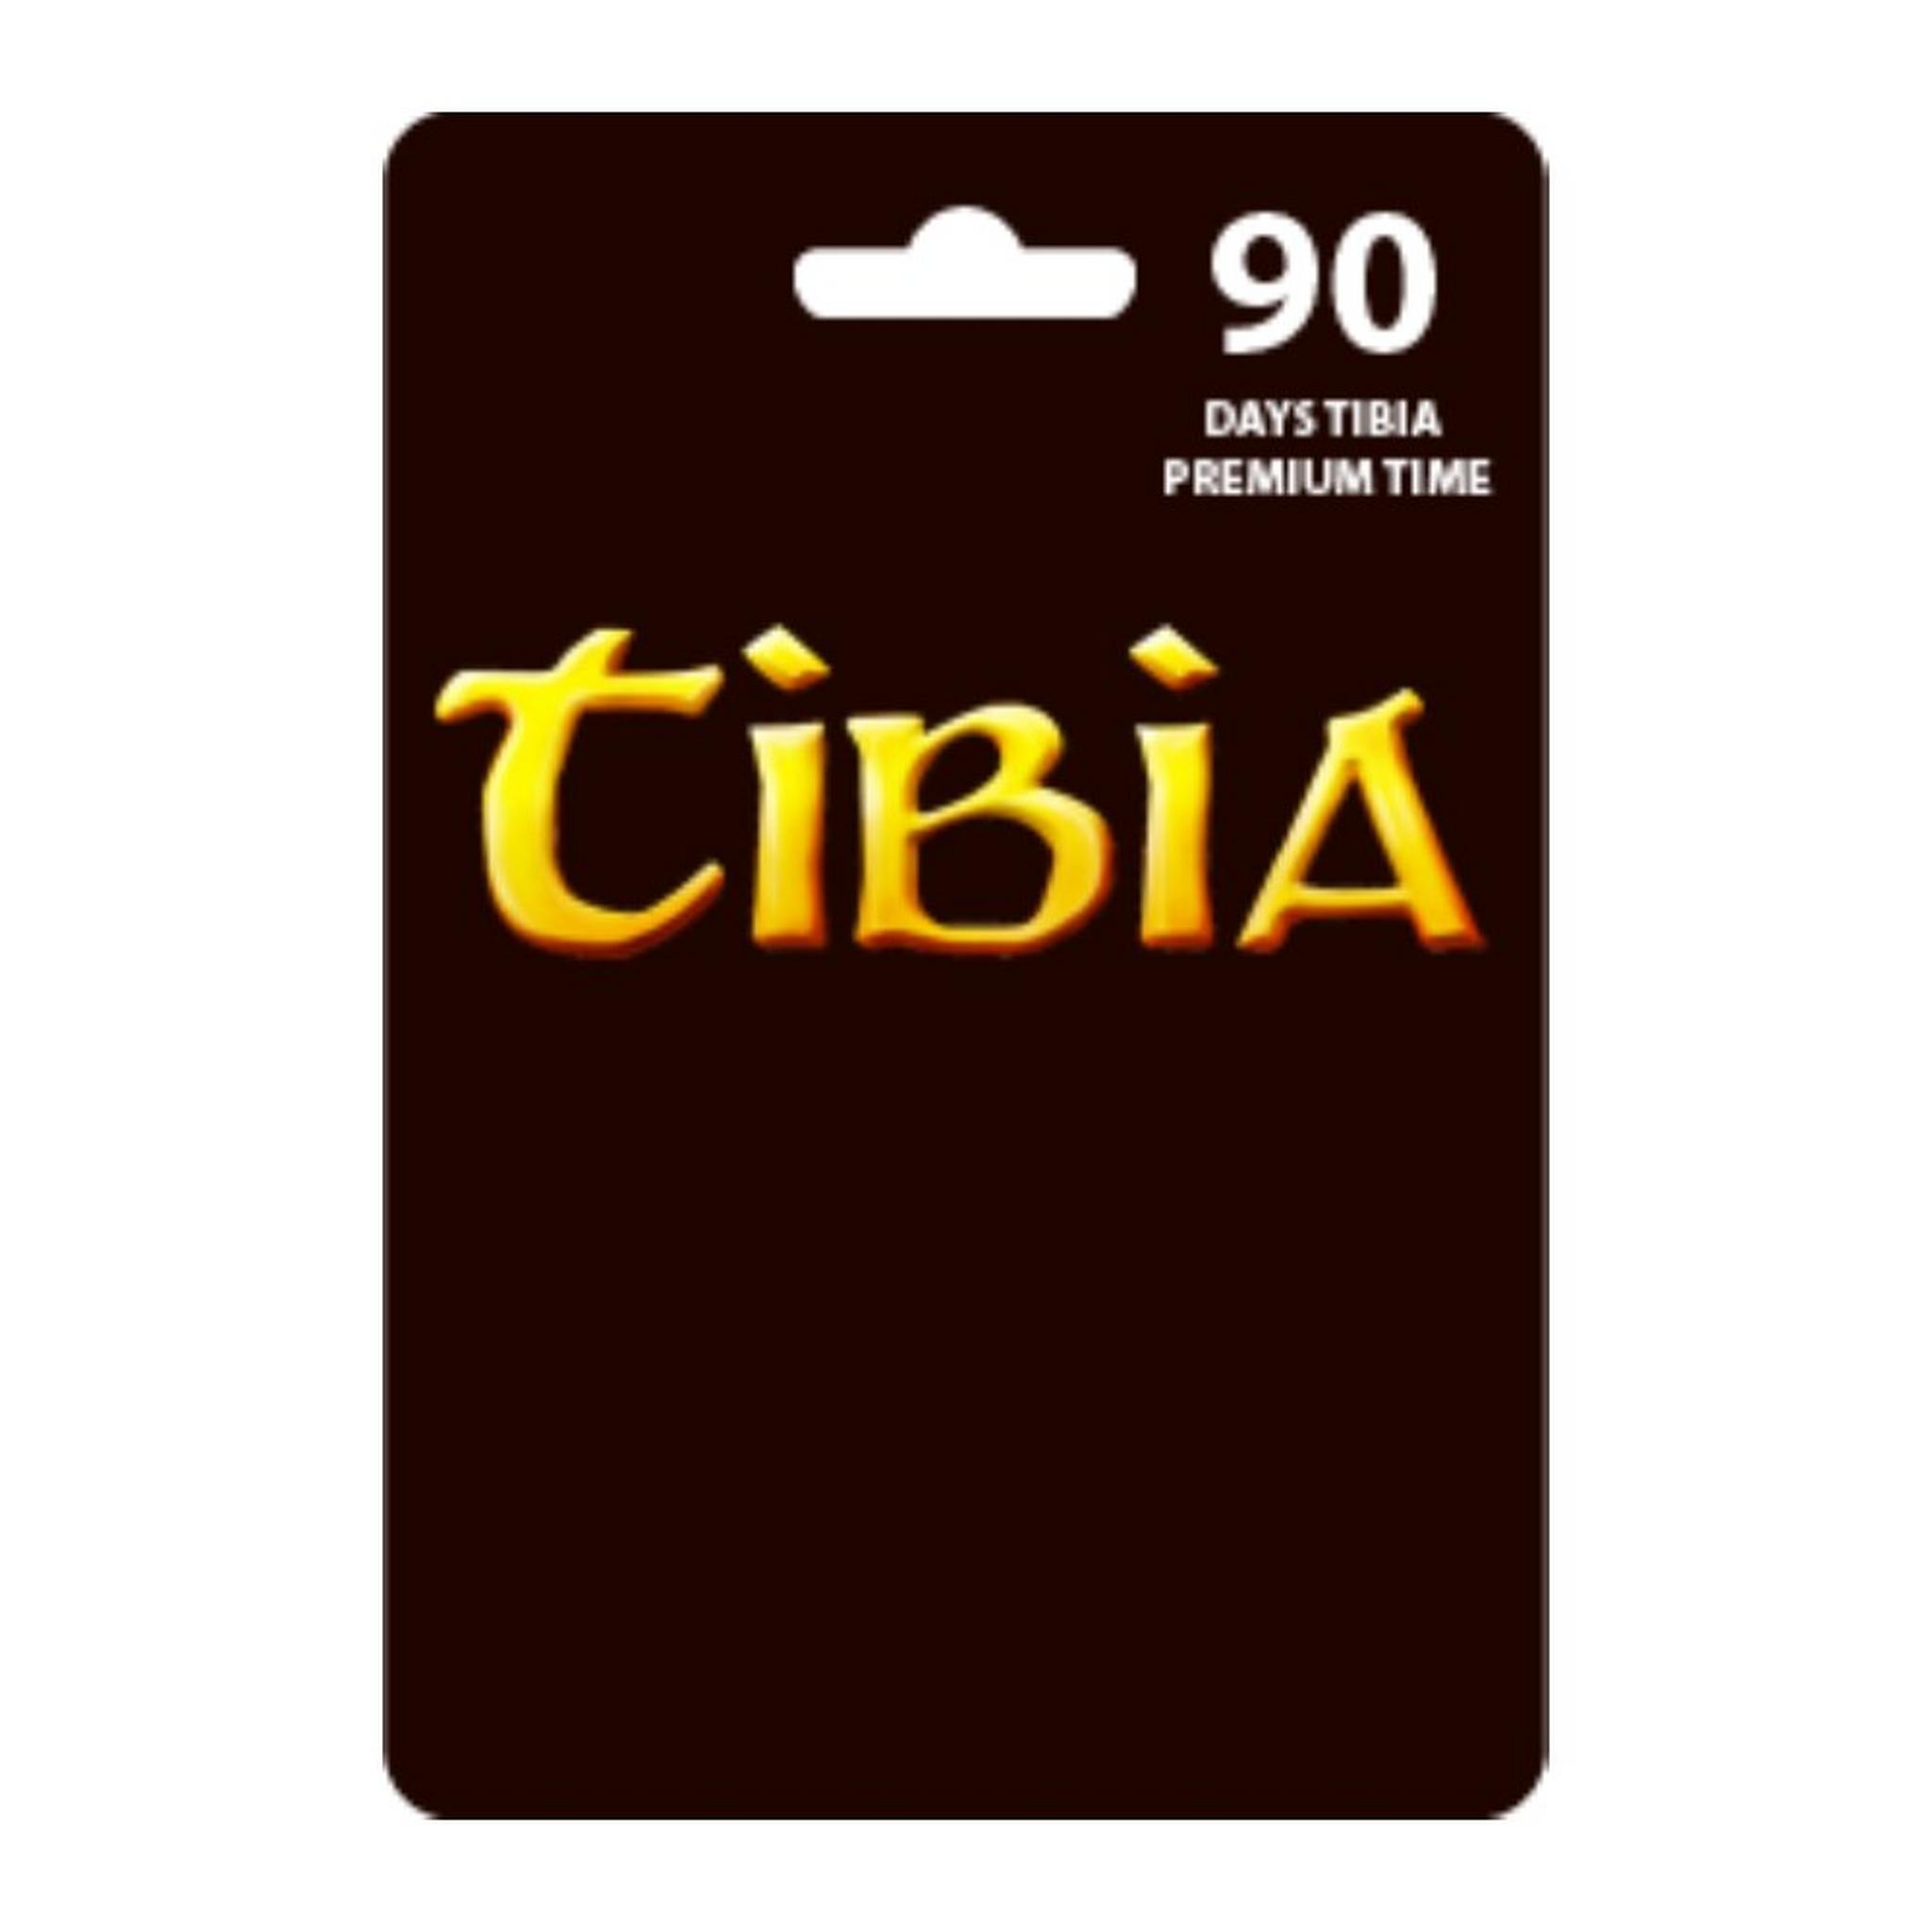 بطاقة تيبيا بريميوم لمدة 90 يوم